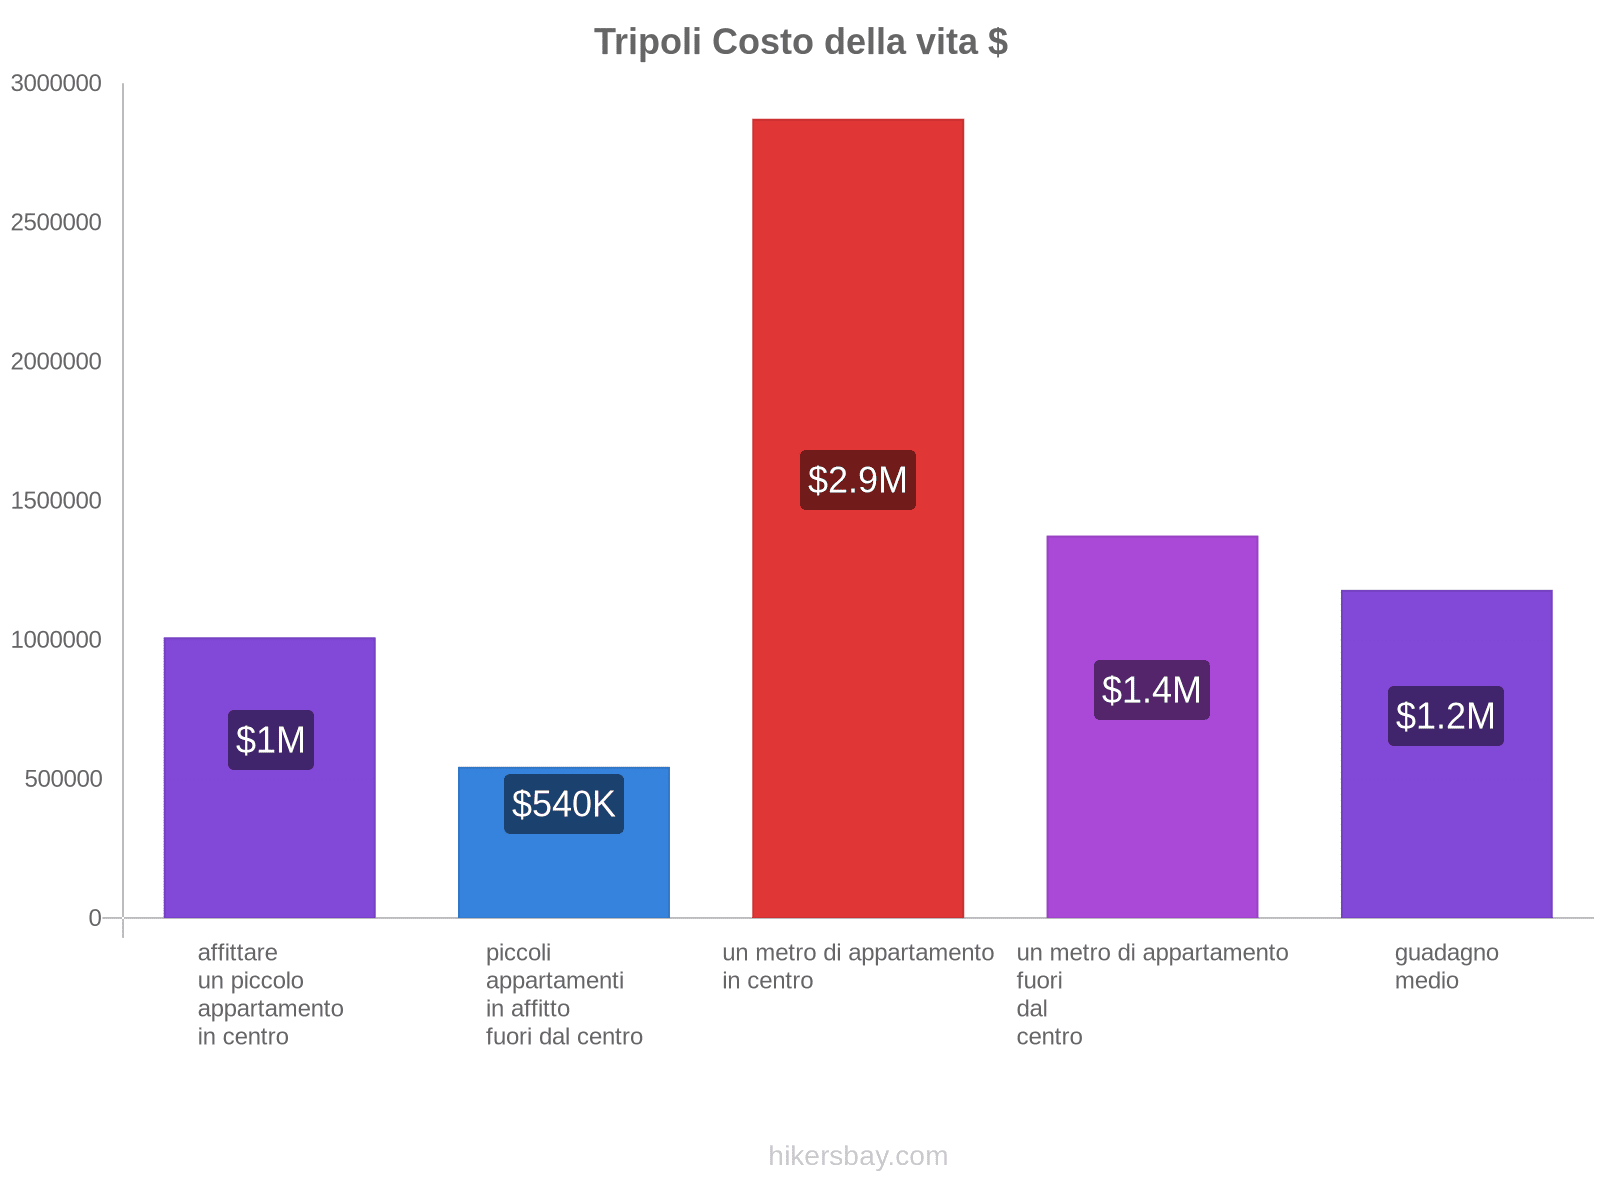 Tripoli costo della vita hikersbay.com